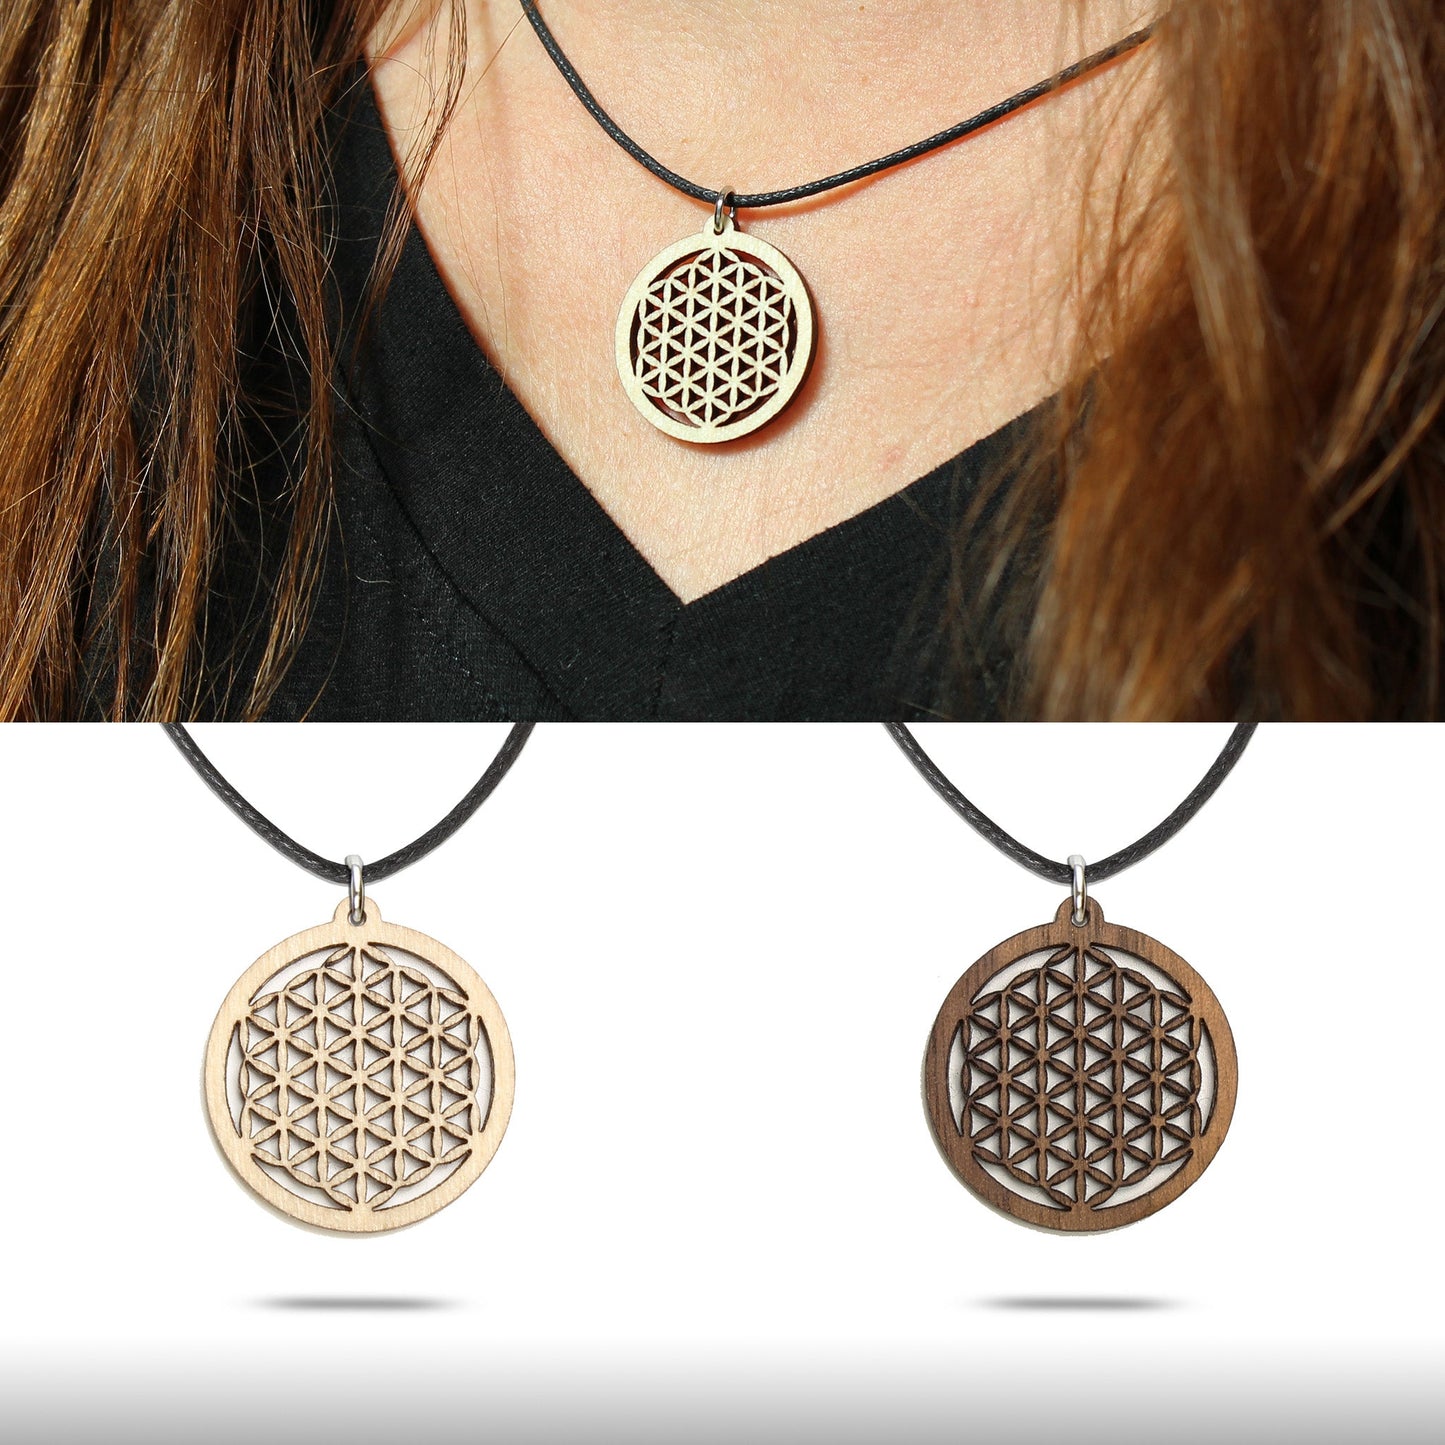 Halskette "Blume des Lebens" klein - Nanino Design Onlineshop -